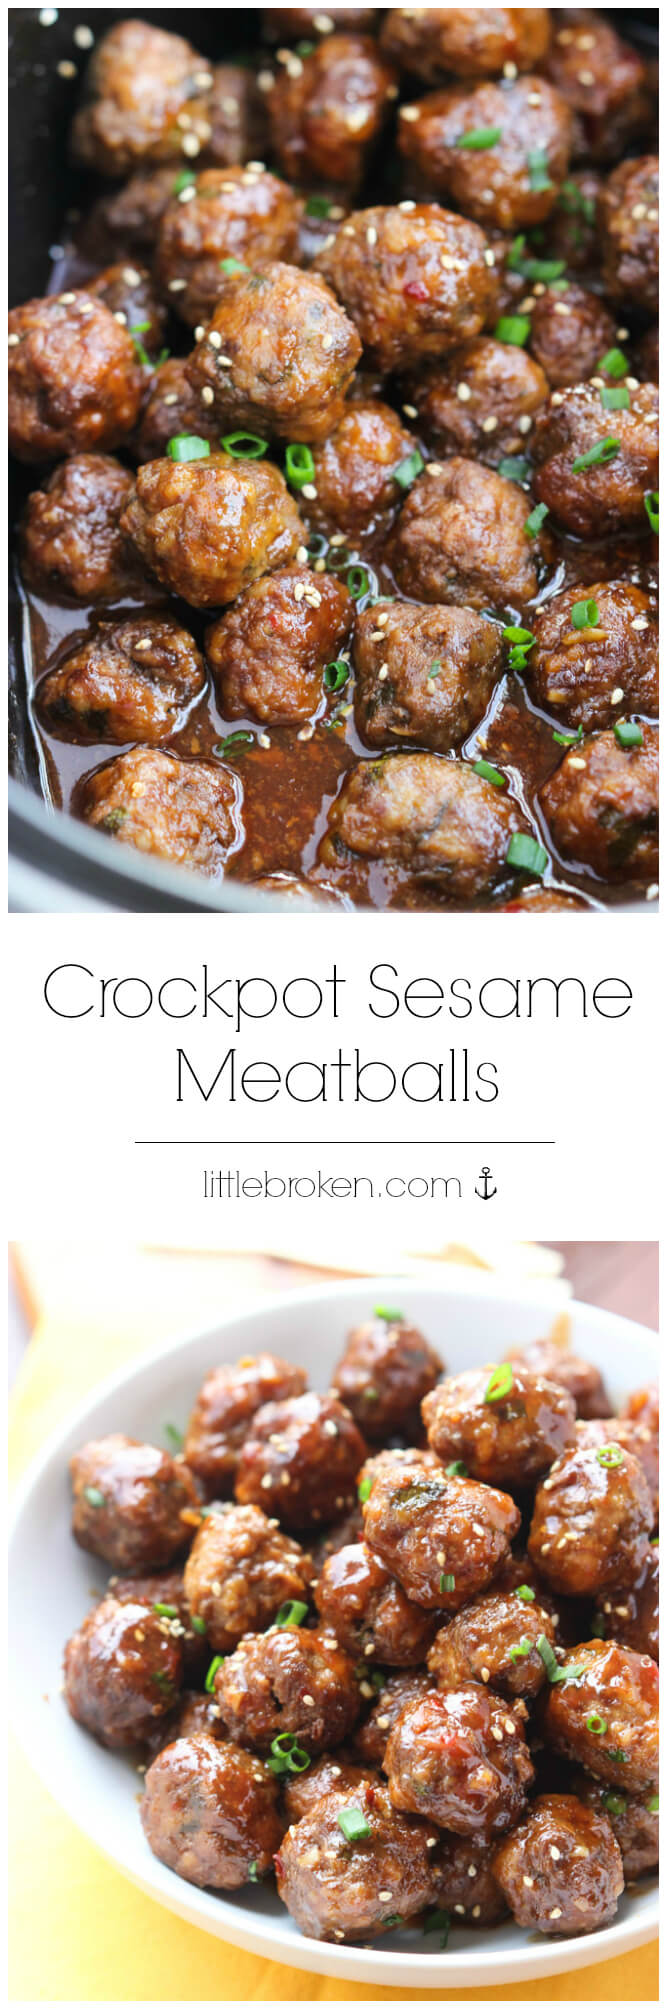 Crockpot Sesame Meatballs - Little Broken